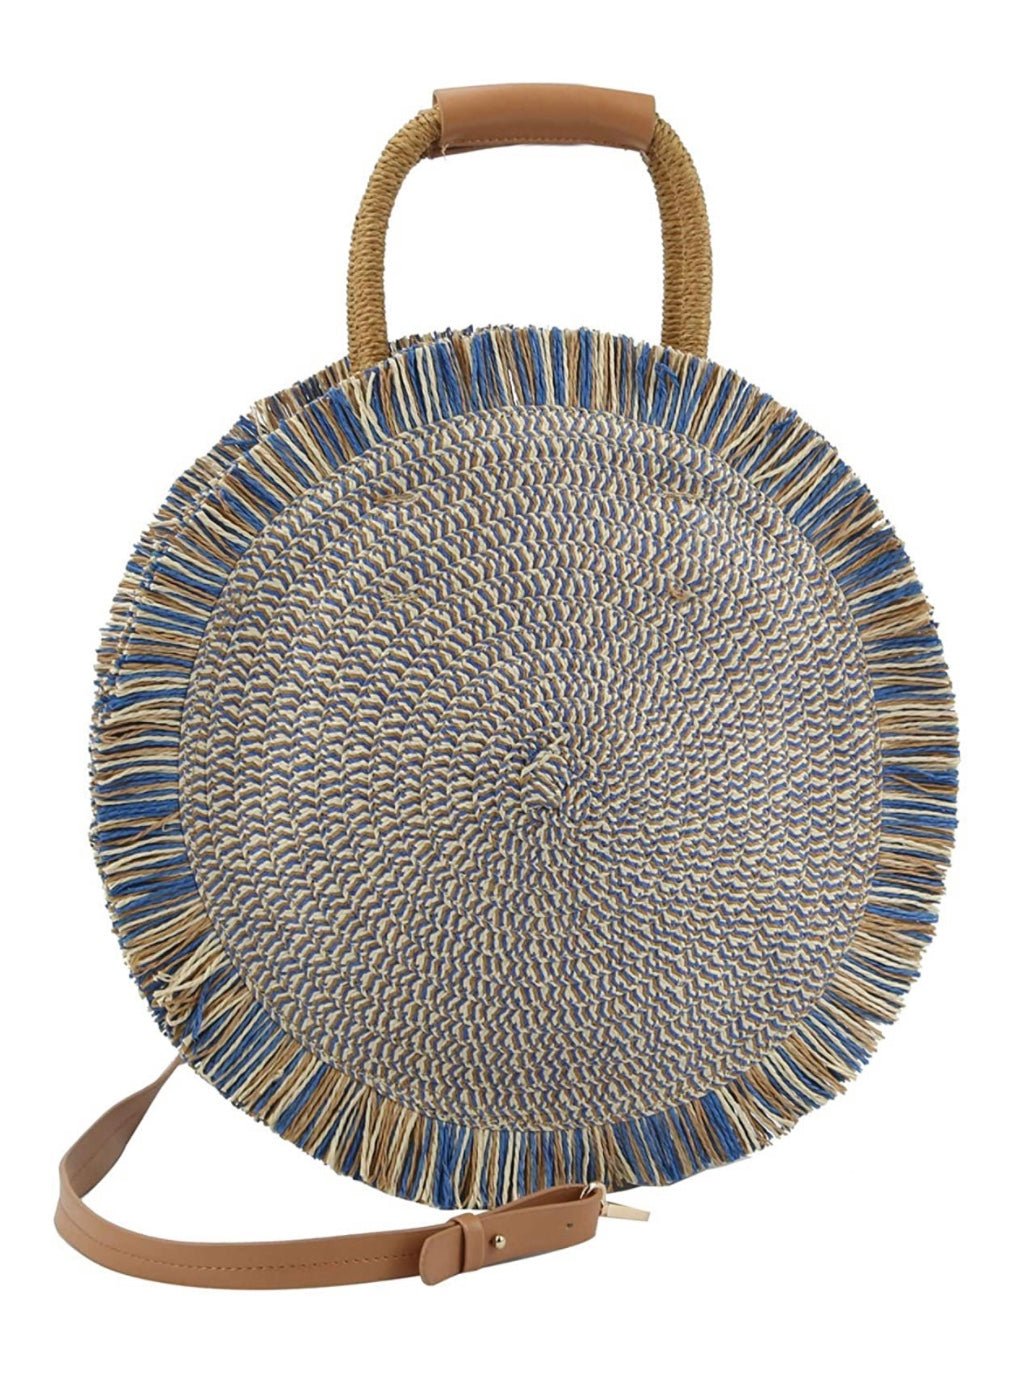 Boho blue round tote beach handbag - Wapas